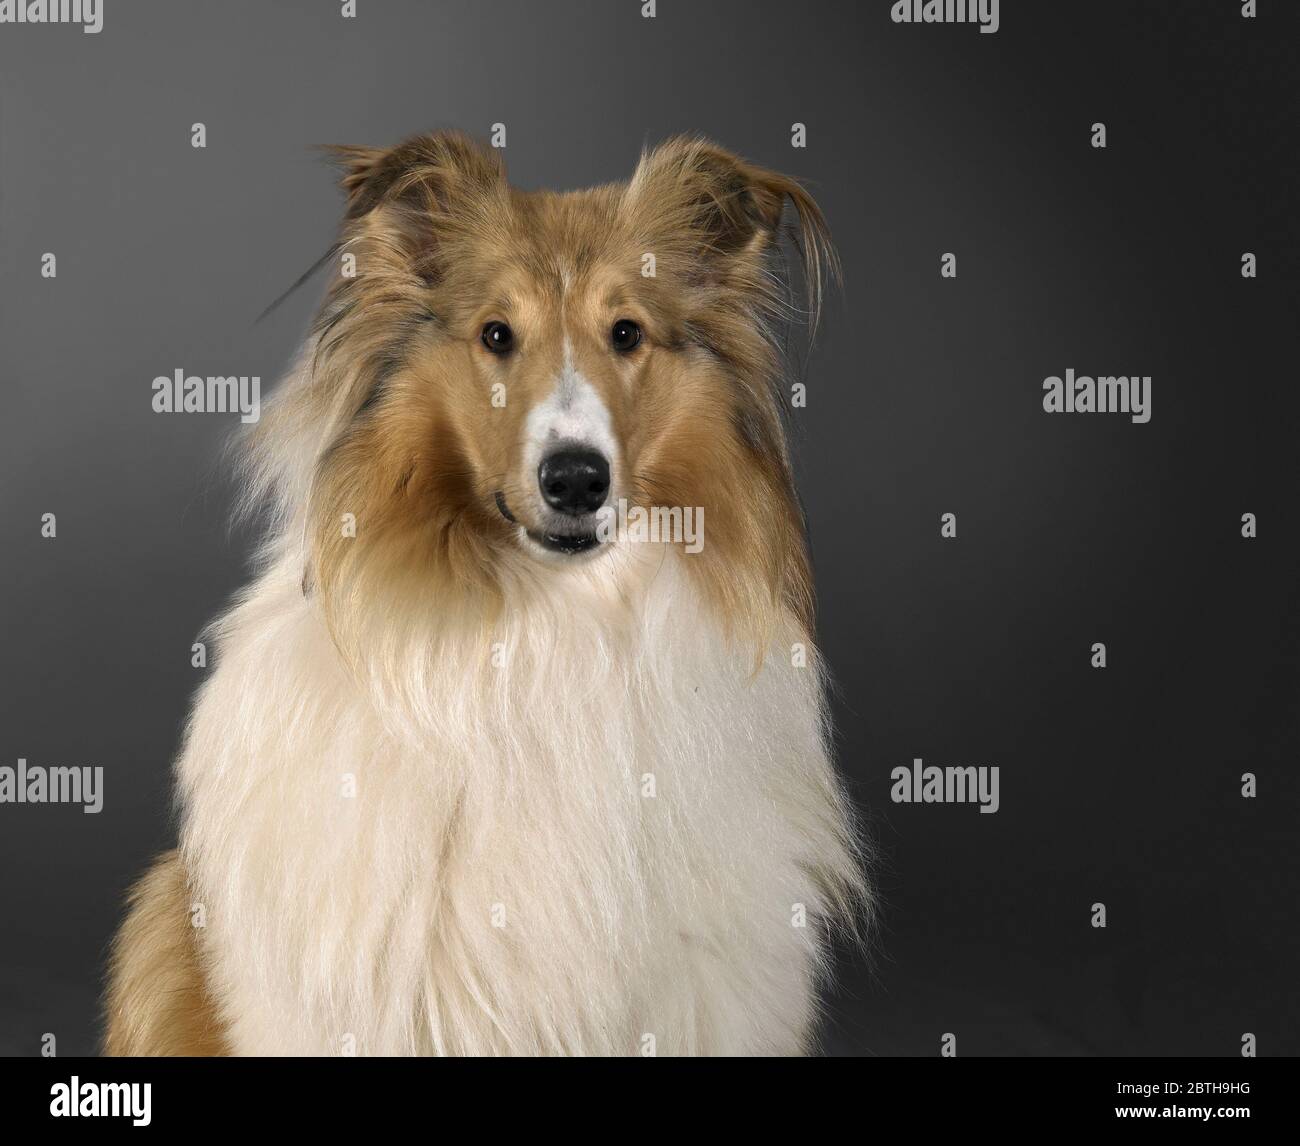 Ritratto di un cane Rough Collie nella schiena scura Foto Stock